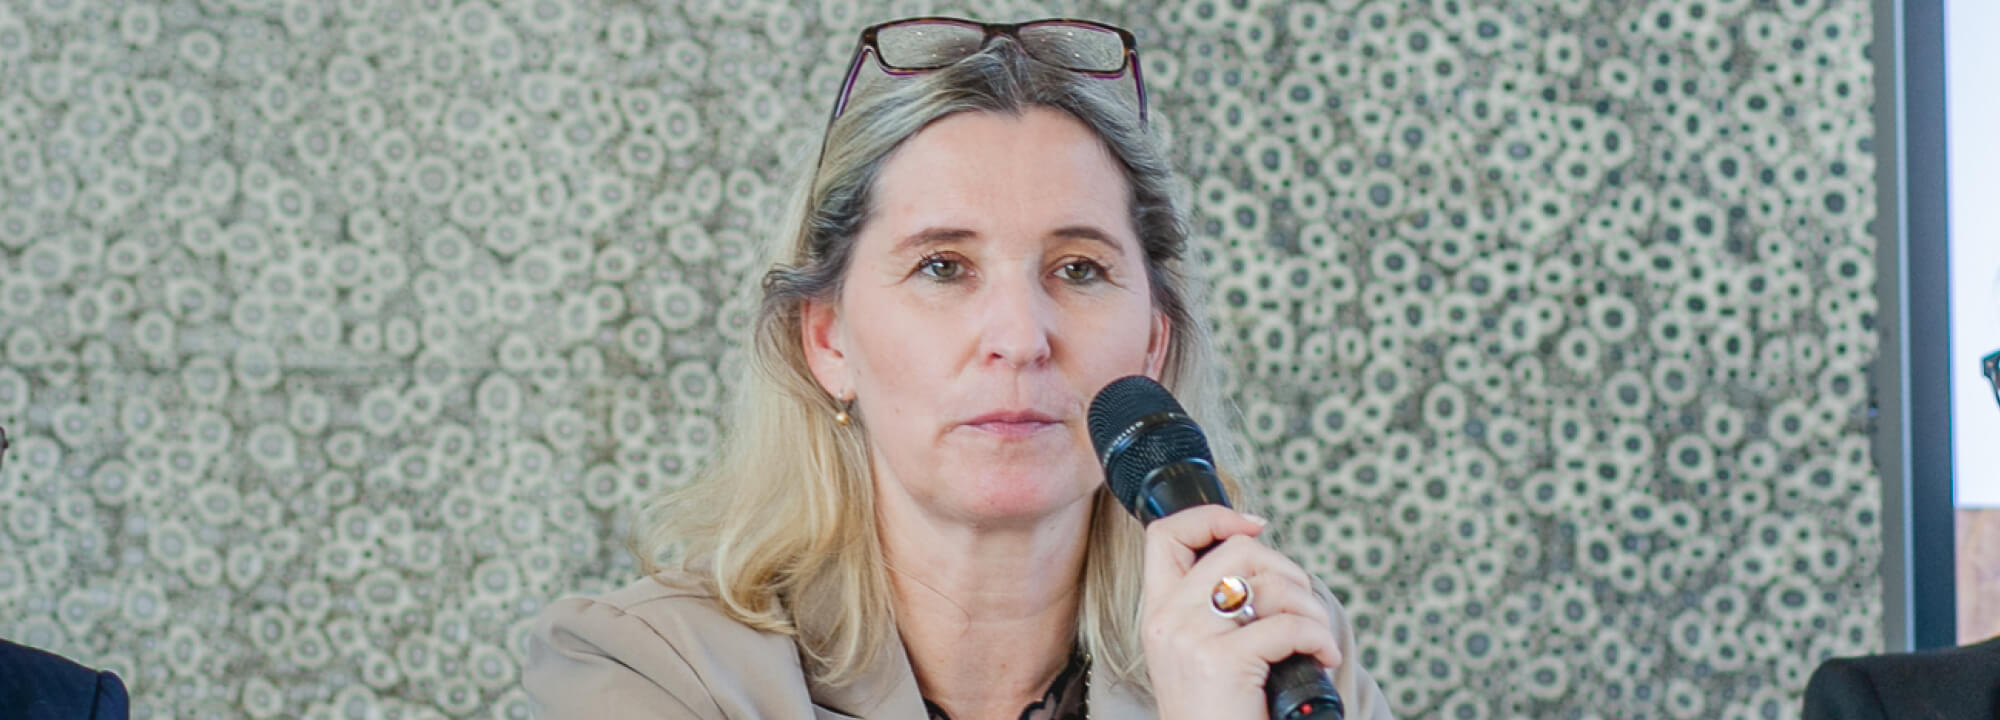 Prof. Dr. Lisa Fröhlich im Interview: Wir werden auch diese Krise meistern